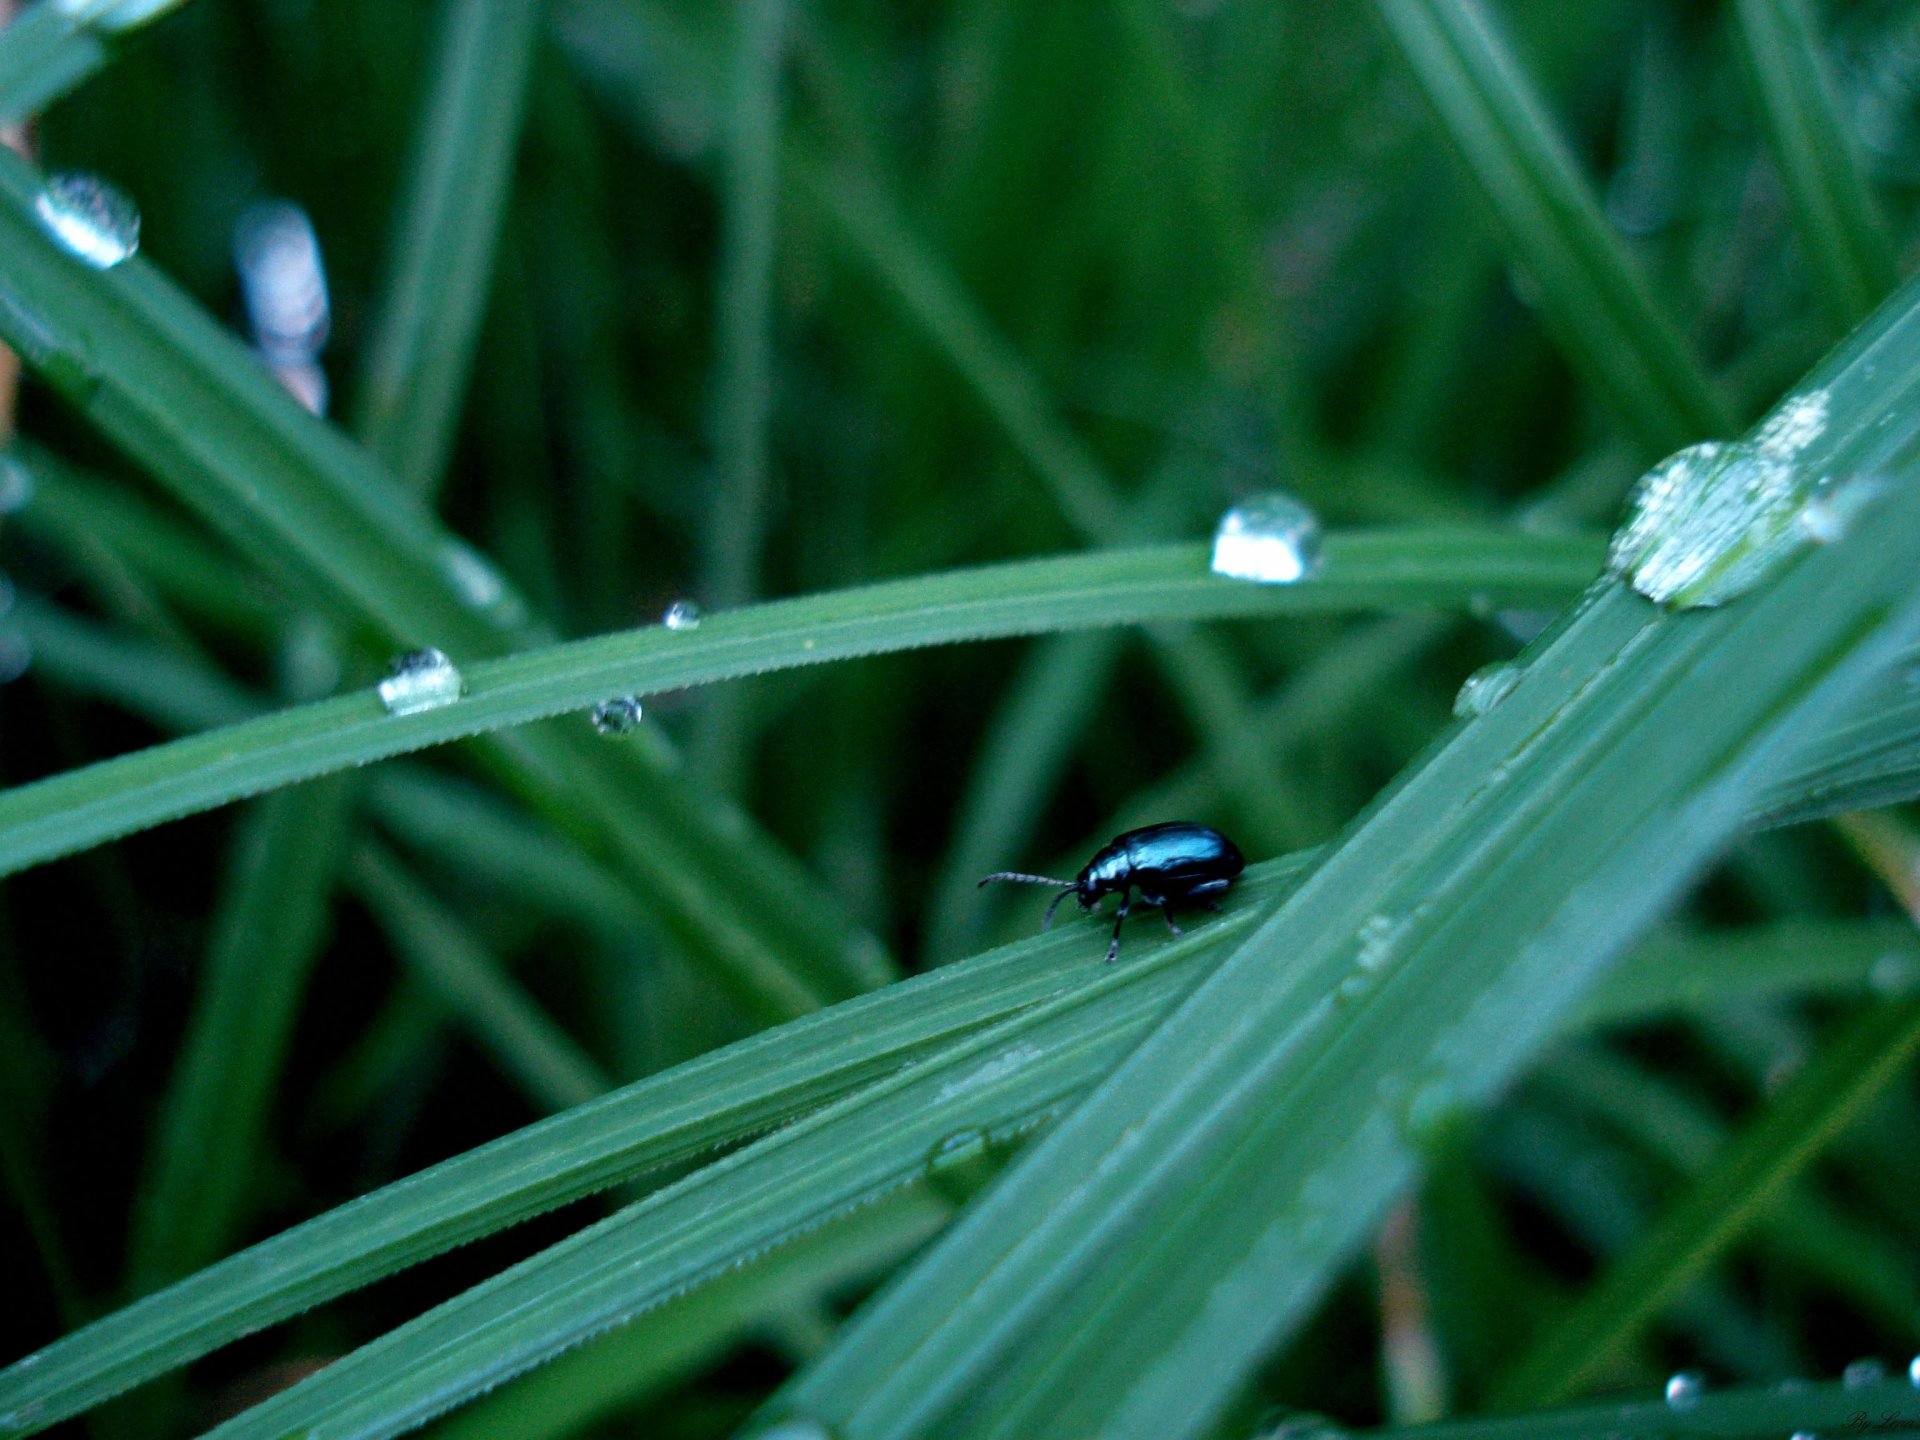 Фон темный жучек после дождя на зеленой травке